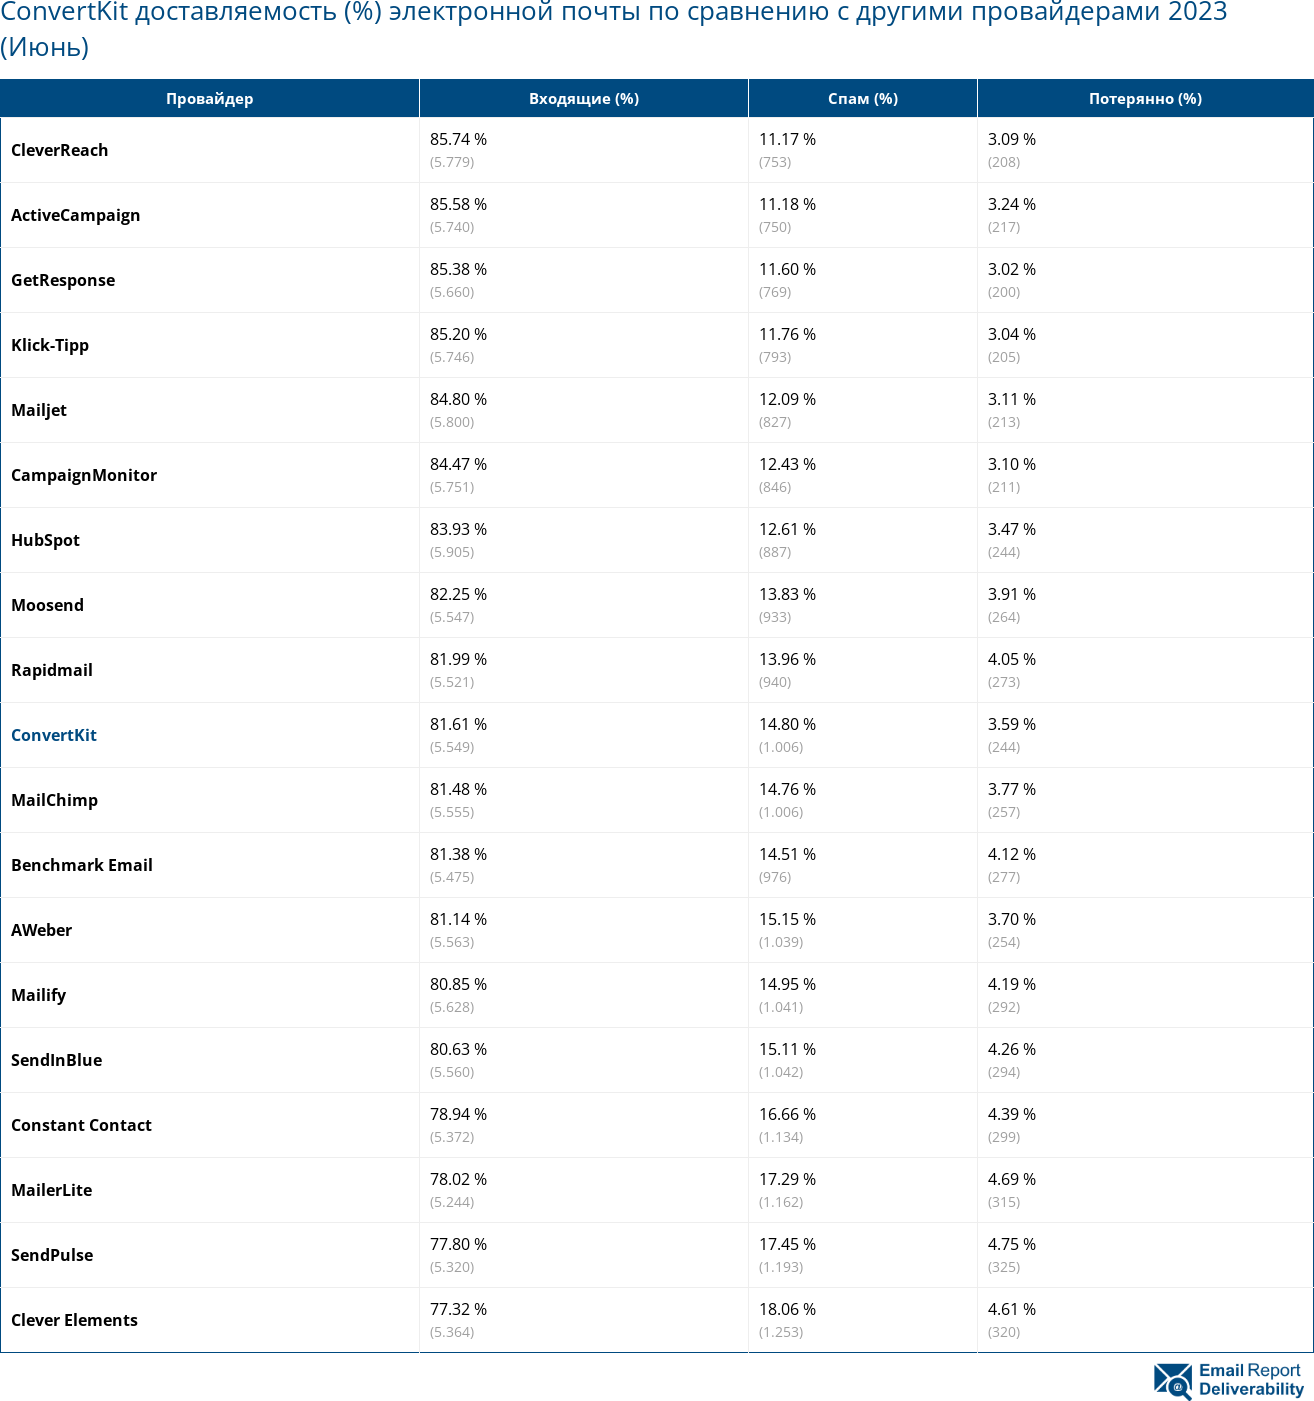 ConvertKit доставляемость (%) электронной почты по сравнению с другими провайдерами 2023 (Июнь)